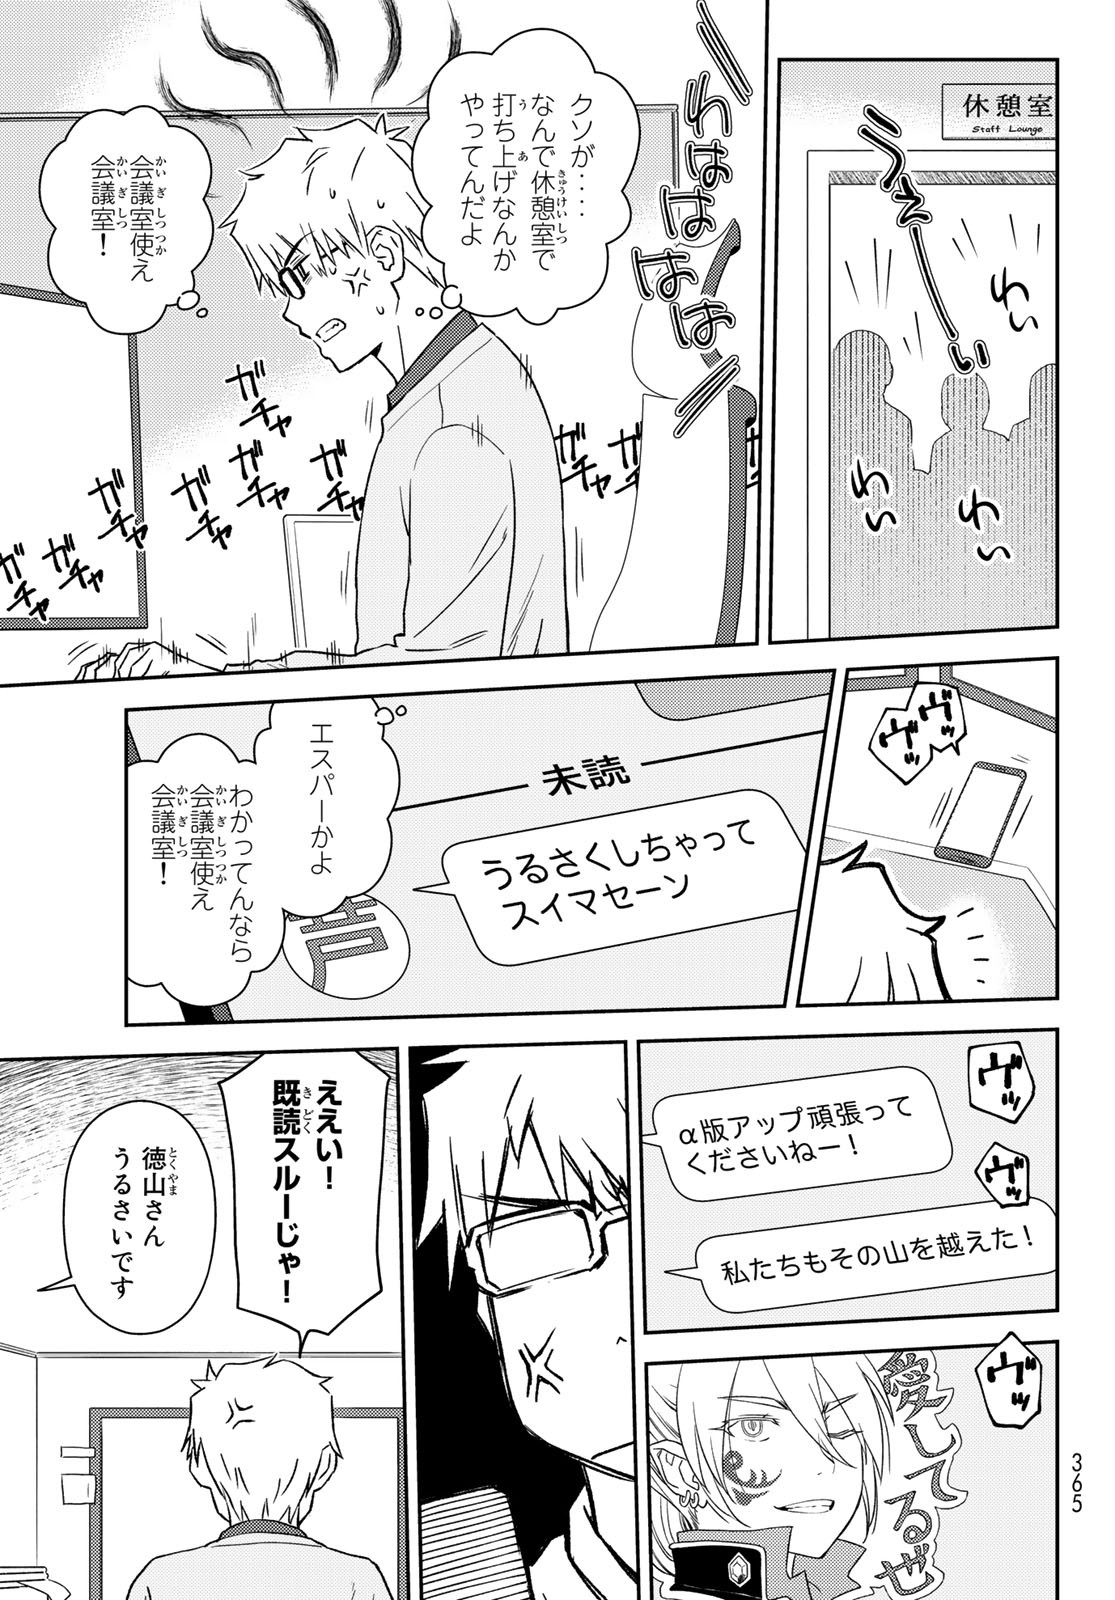 Shougakusei ga Mama demo Ii desu ka? - Chapter 24 - Page 3